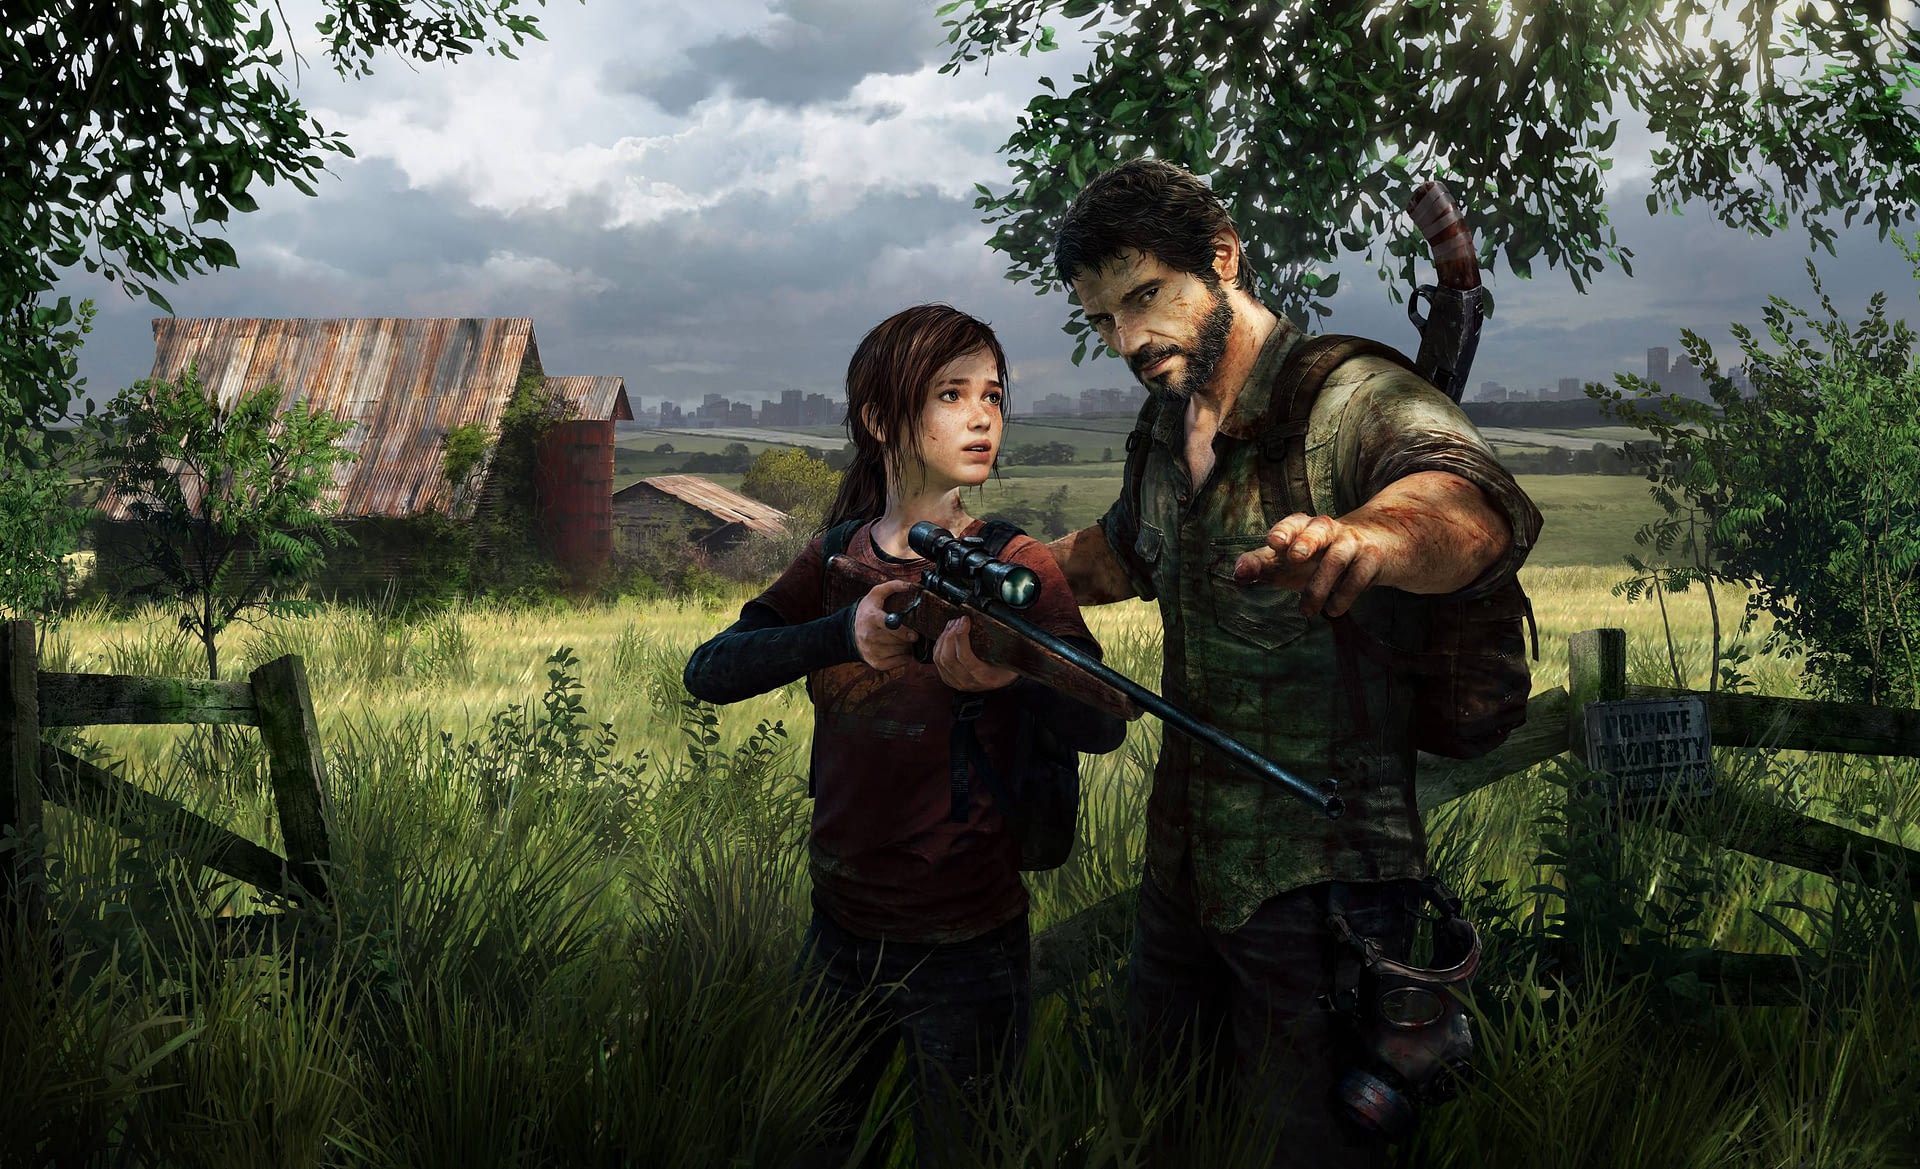 Joel and Ellie in The Last of Us